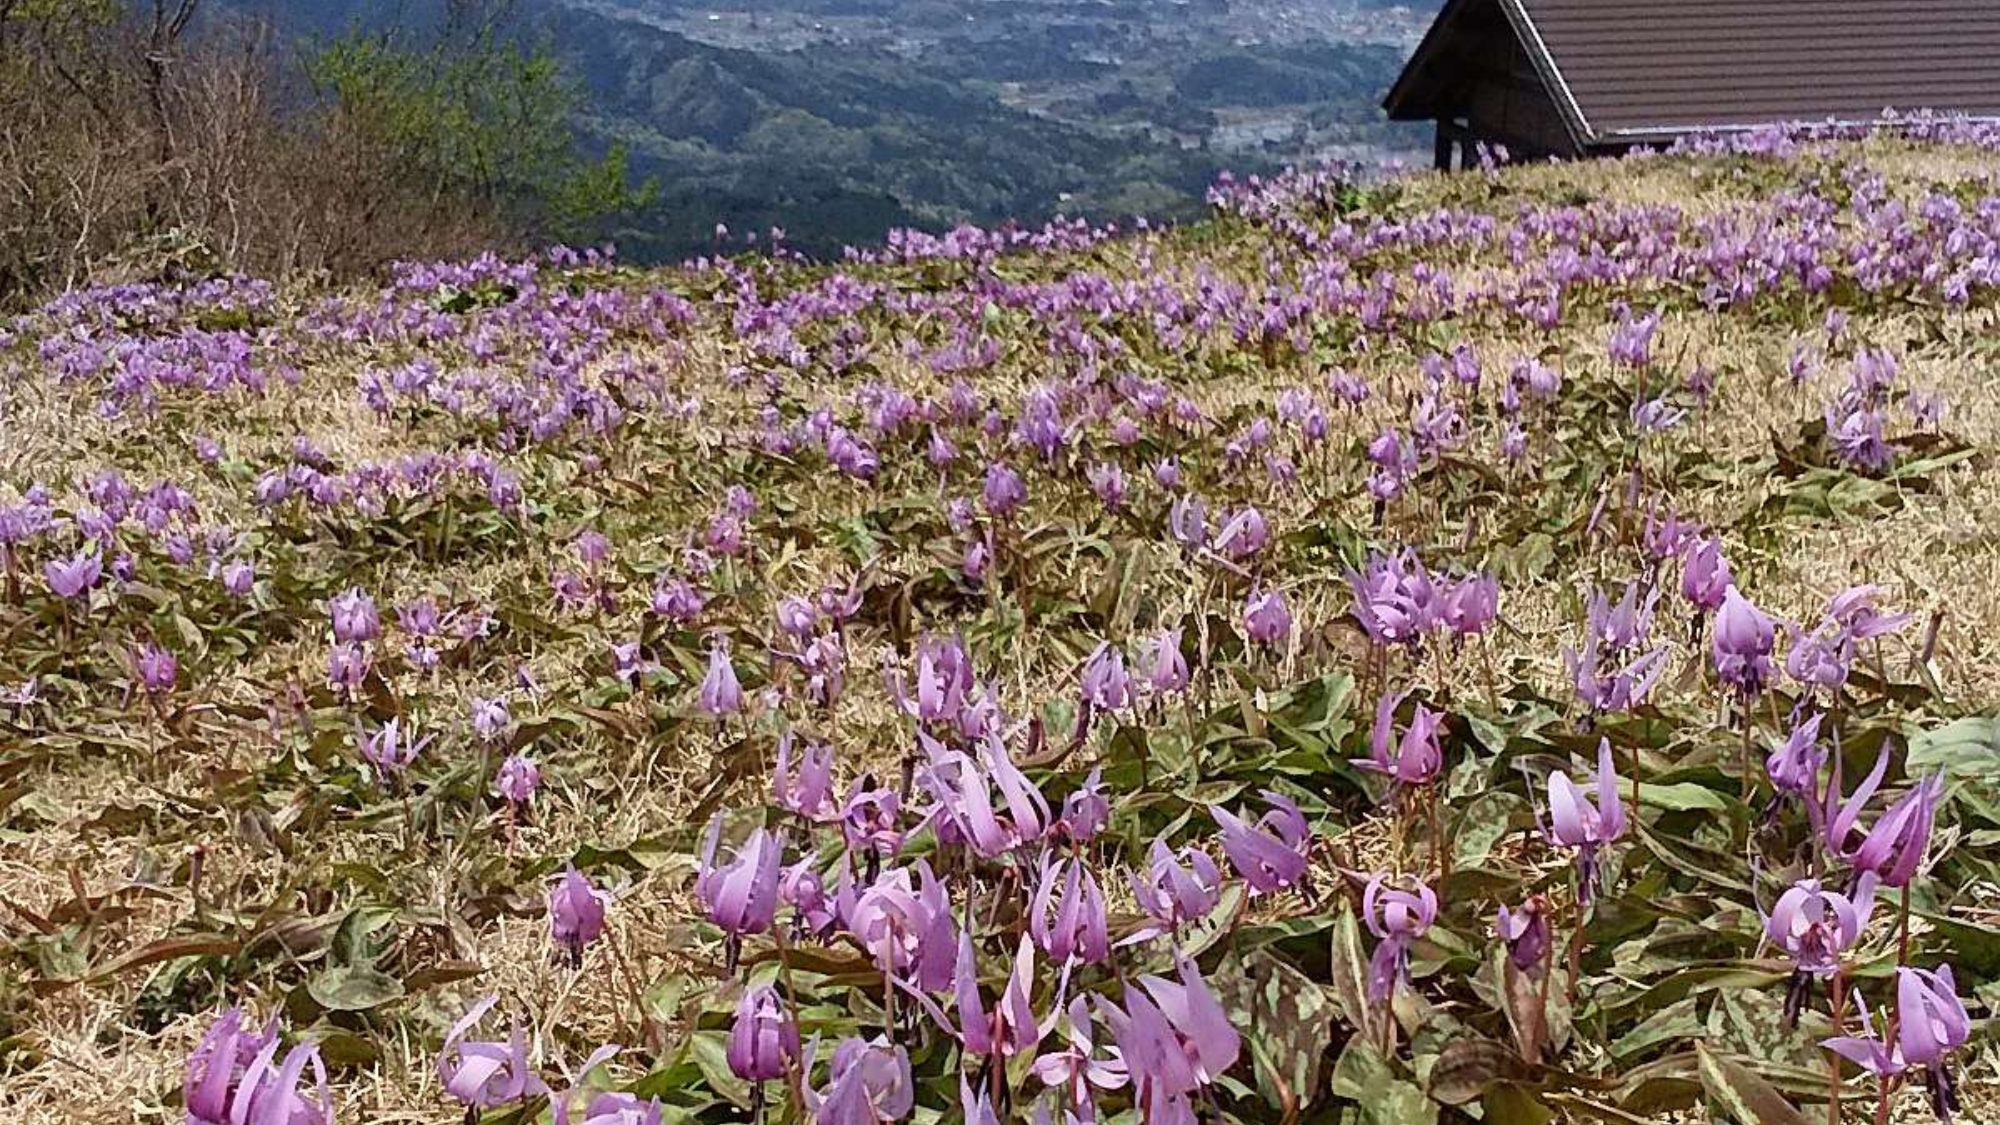 【船通山のかたくり】紫色の花が一面に咲いている綺麗な光景です。遠くには奥出雲の町並みも。